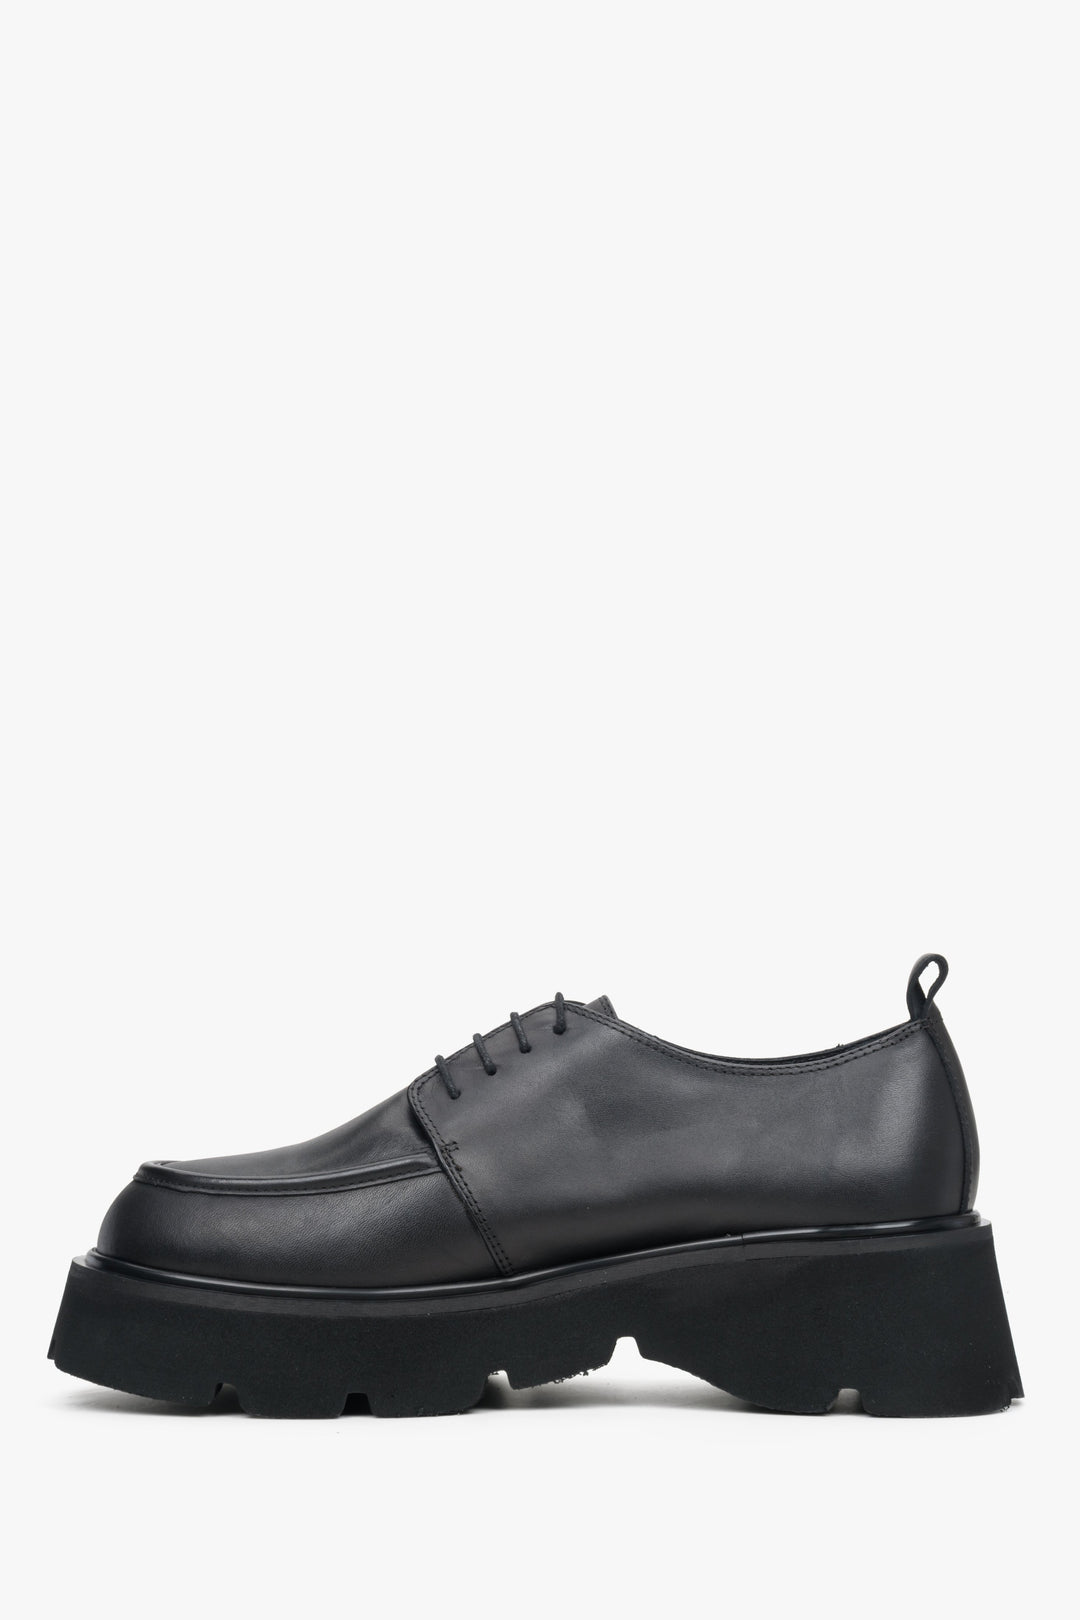 Skórzane czarne półbuty damskie ze sznurowaniem Estro - profil buta.